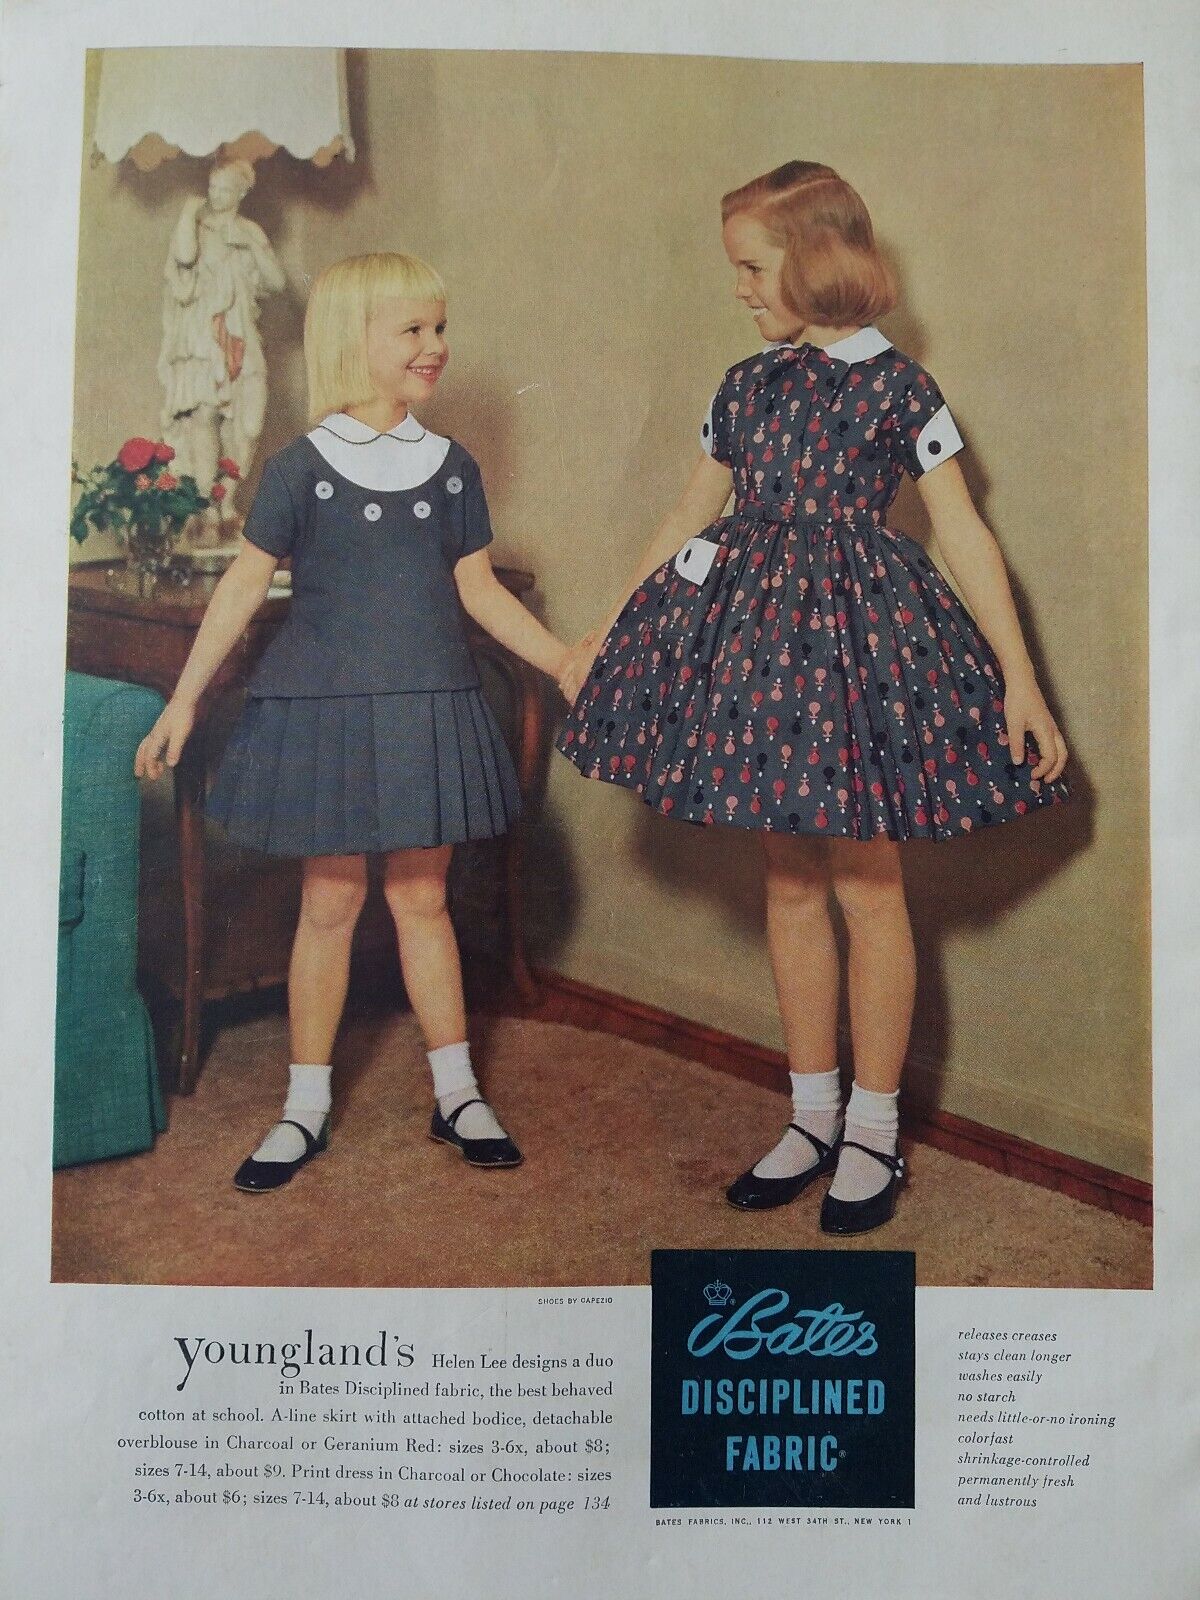 1955 Bates disciplined fabric little girls Youngland Helen Lee design dress ad